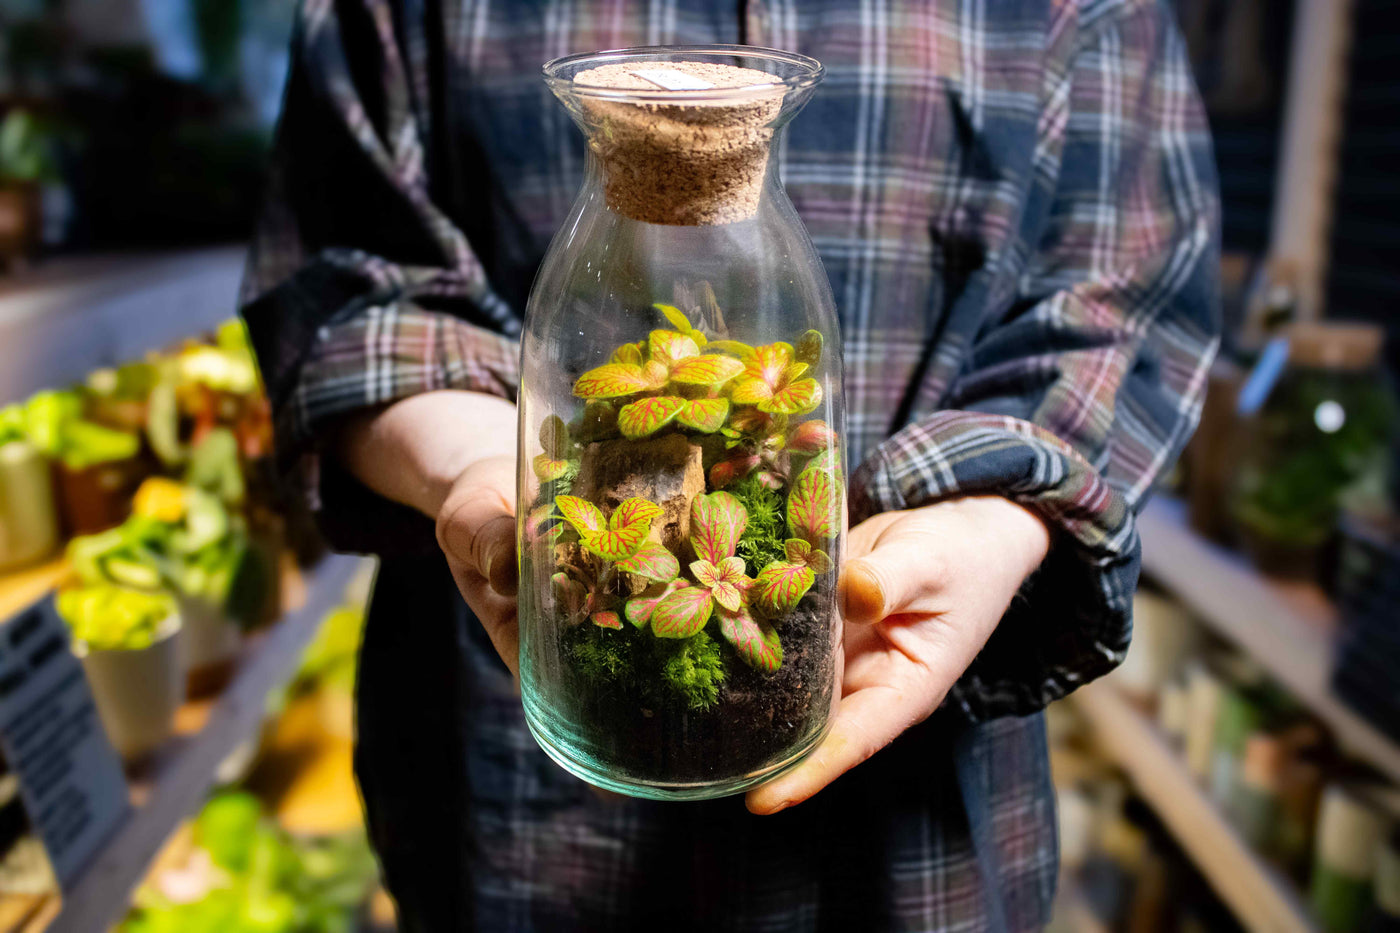 Handmade bottle terrarium kit - for sale in the UK